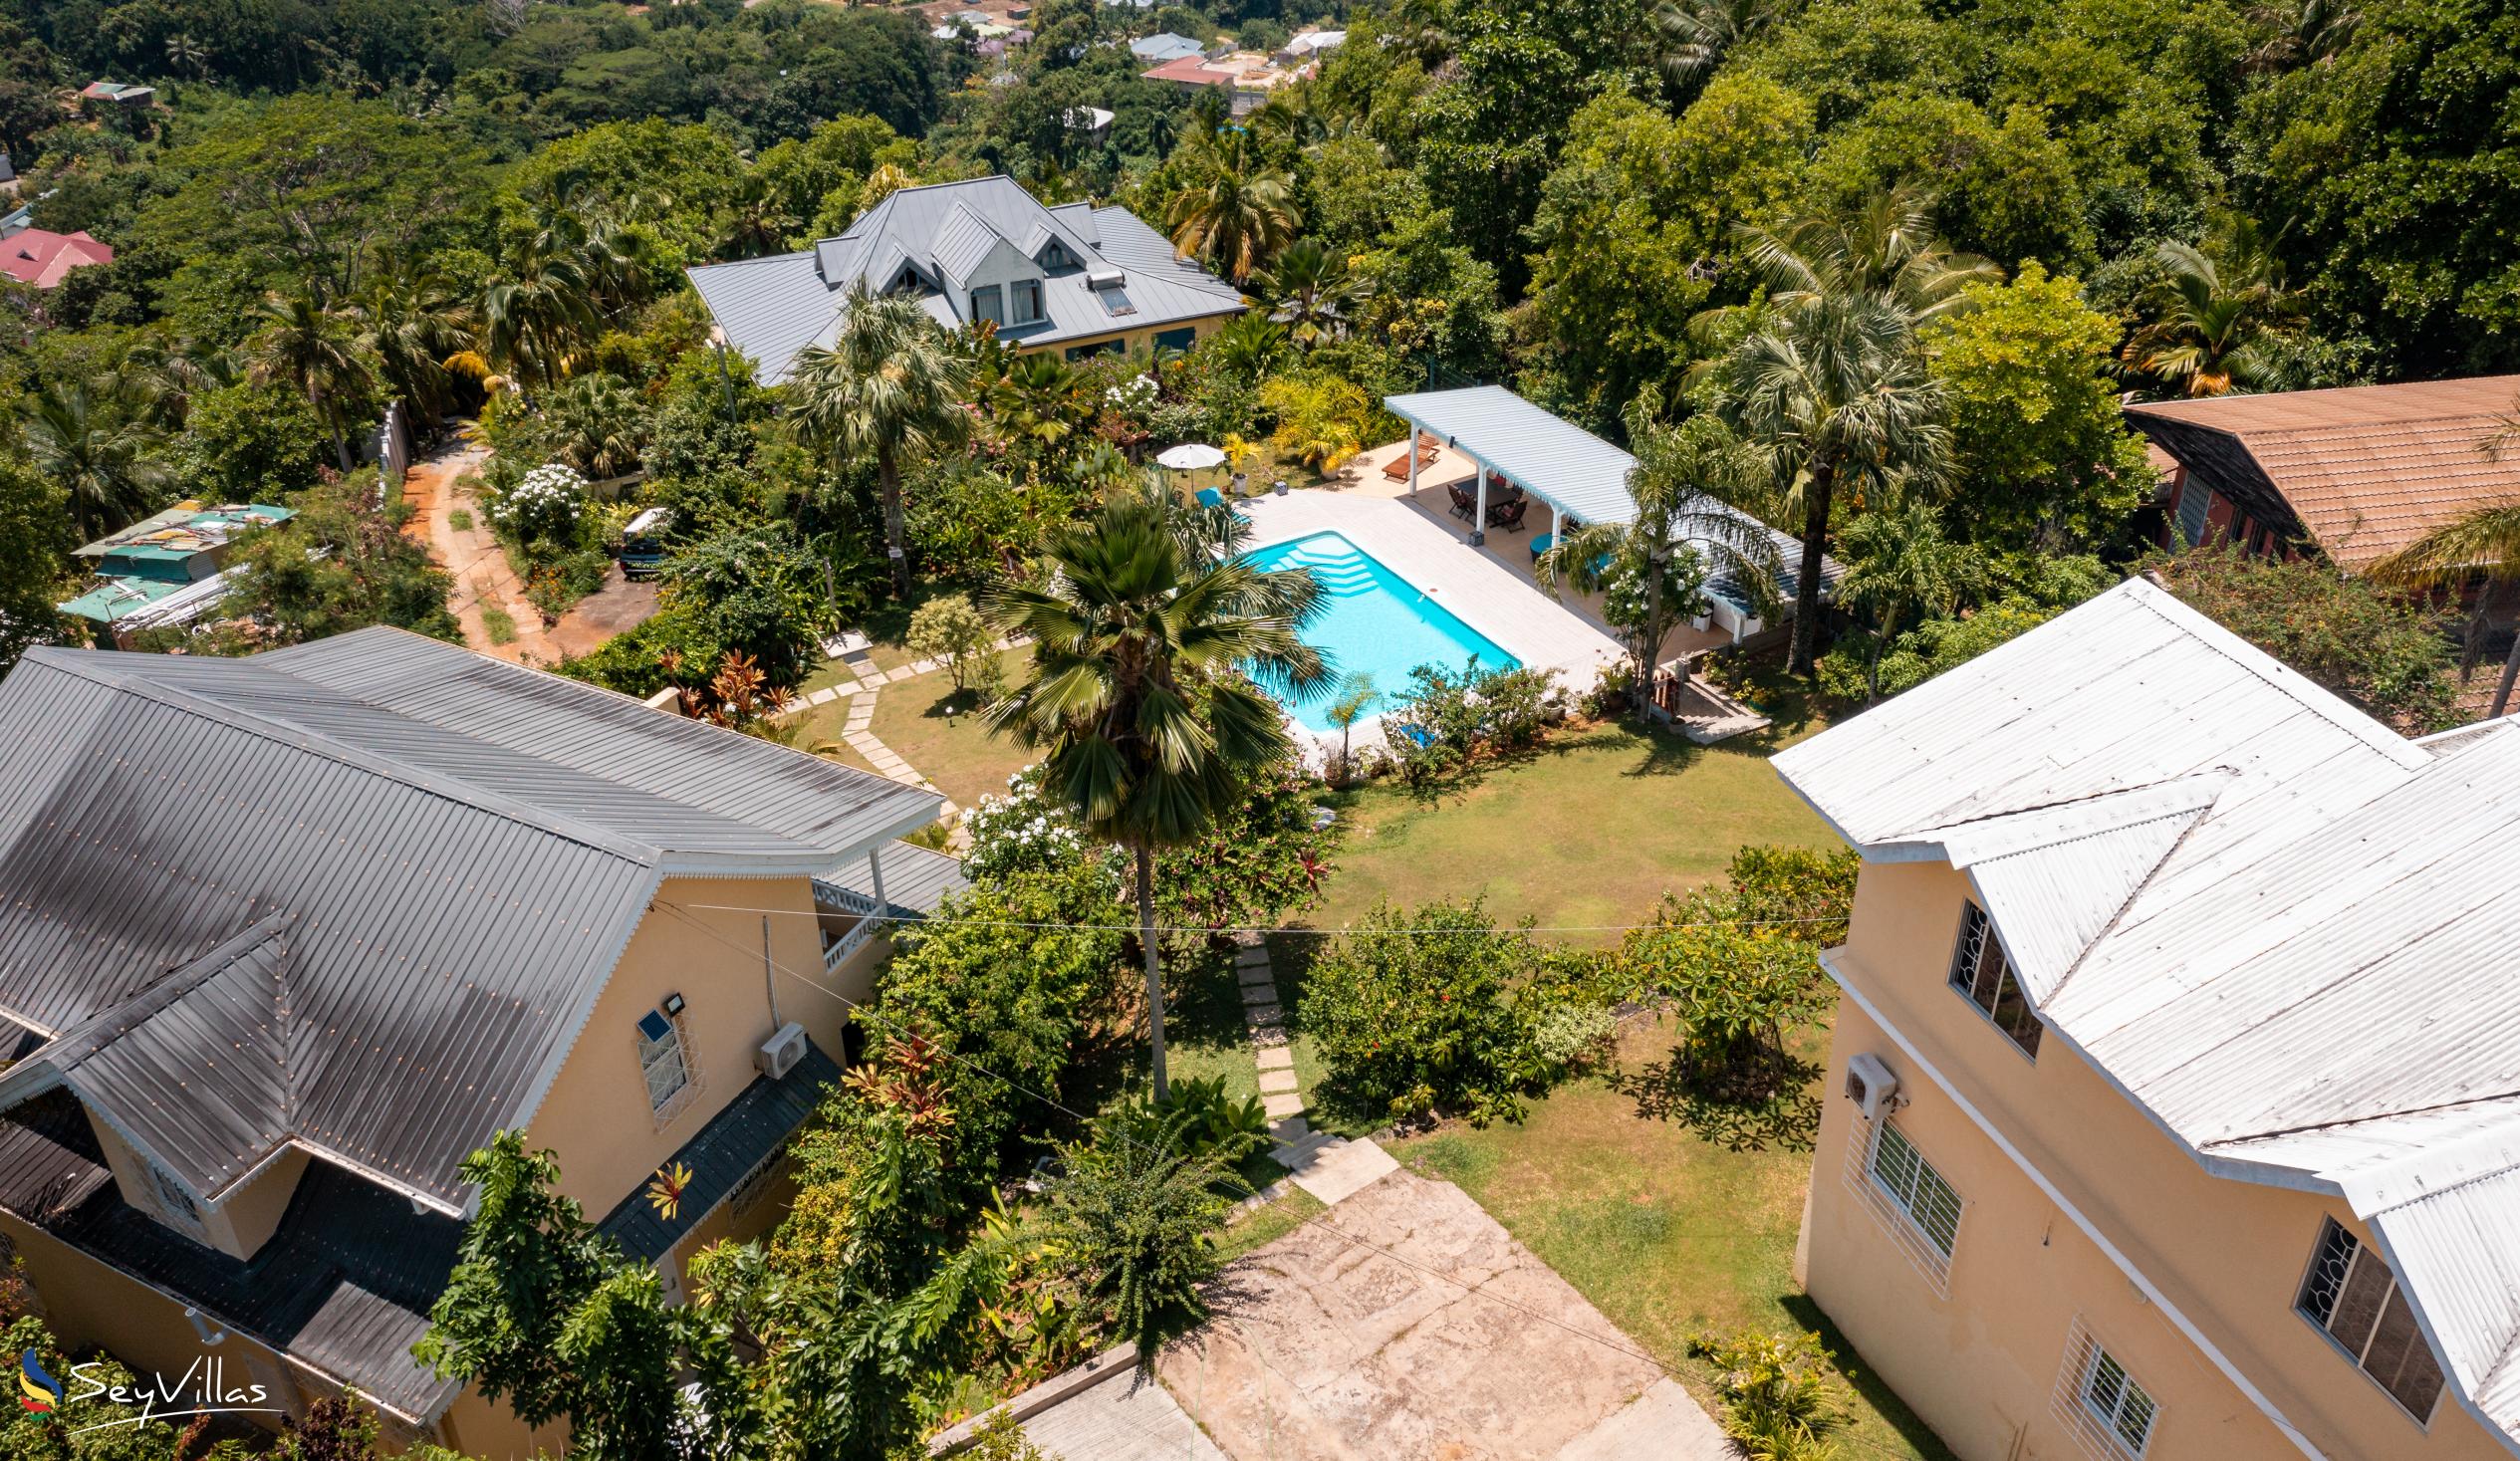 Foto 6: Residence Monte Cristo - Extérieur - Mahé (Seychelles)